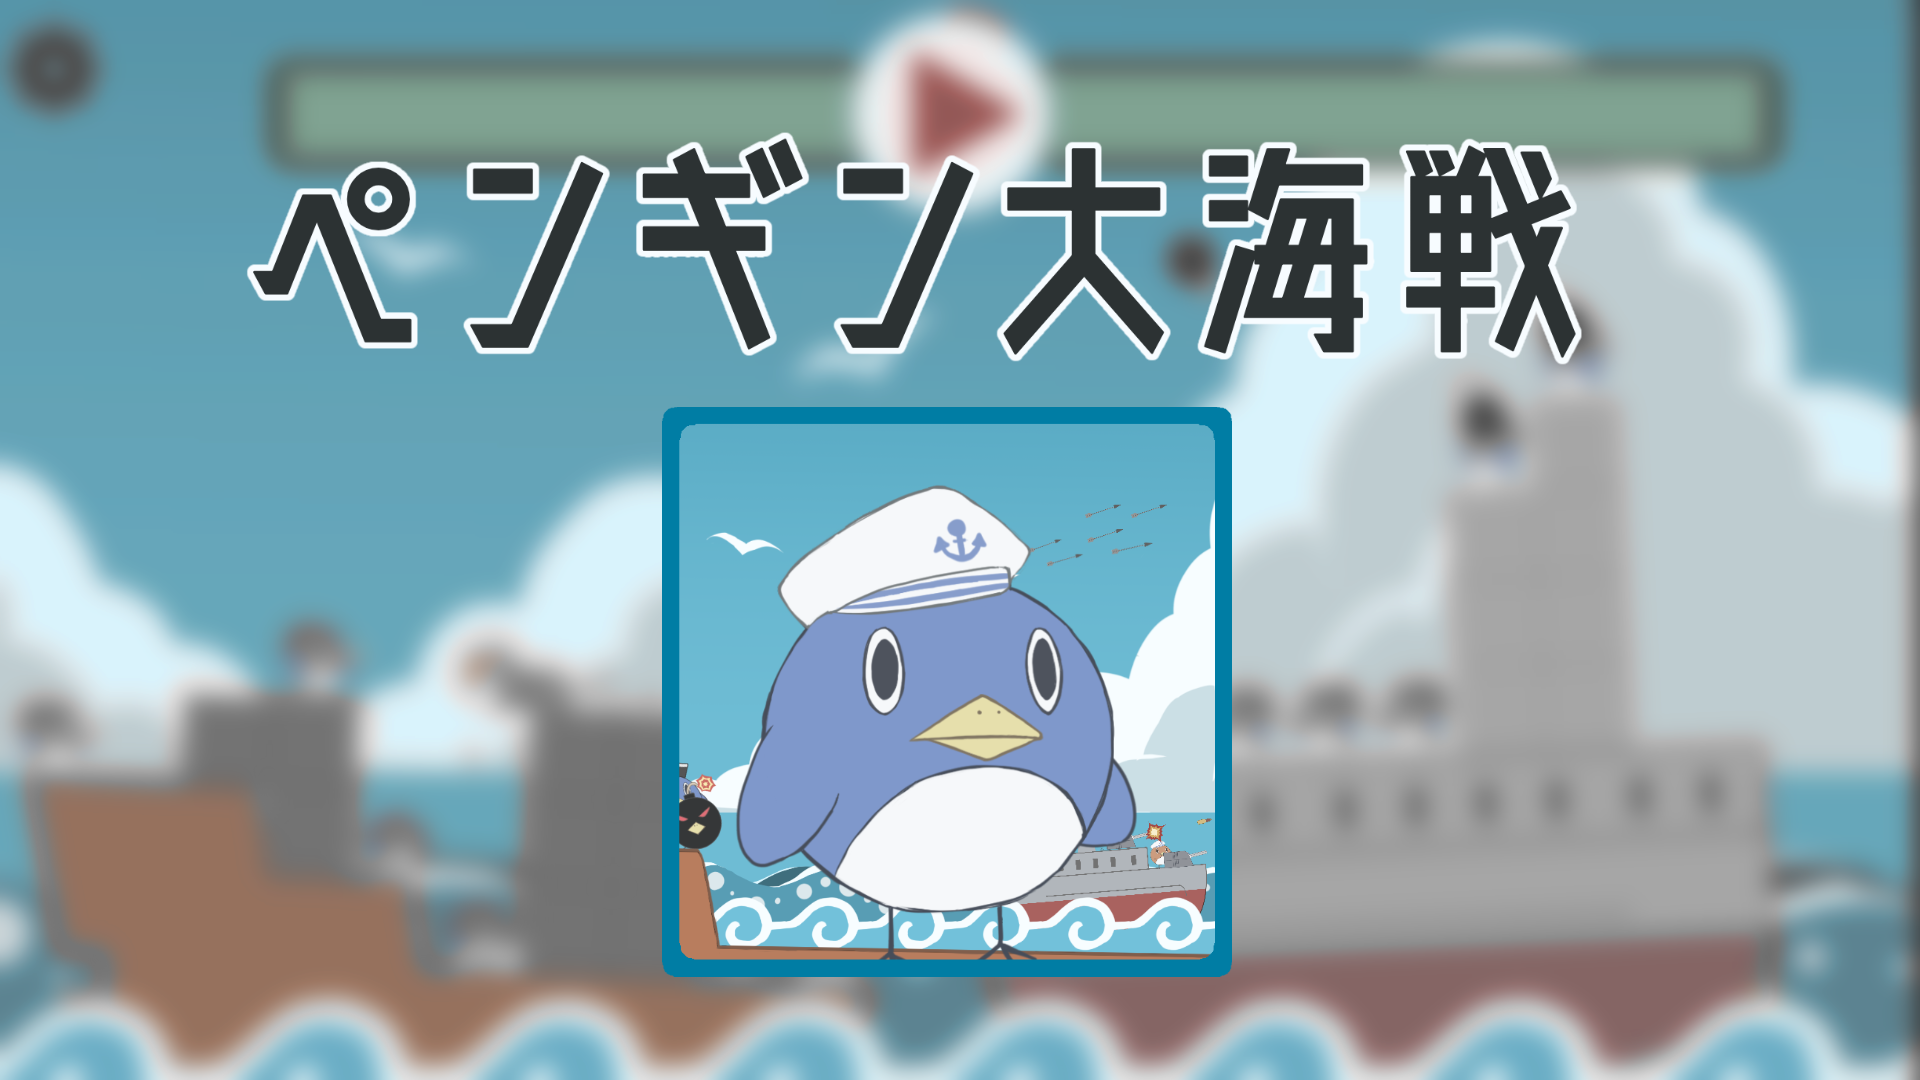 【RM】タワーディフェンスゲーム「ペンギン大海戦」 のサムネイル